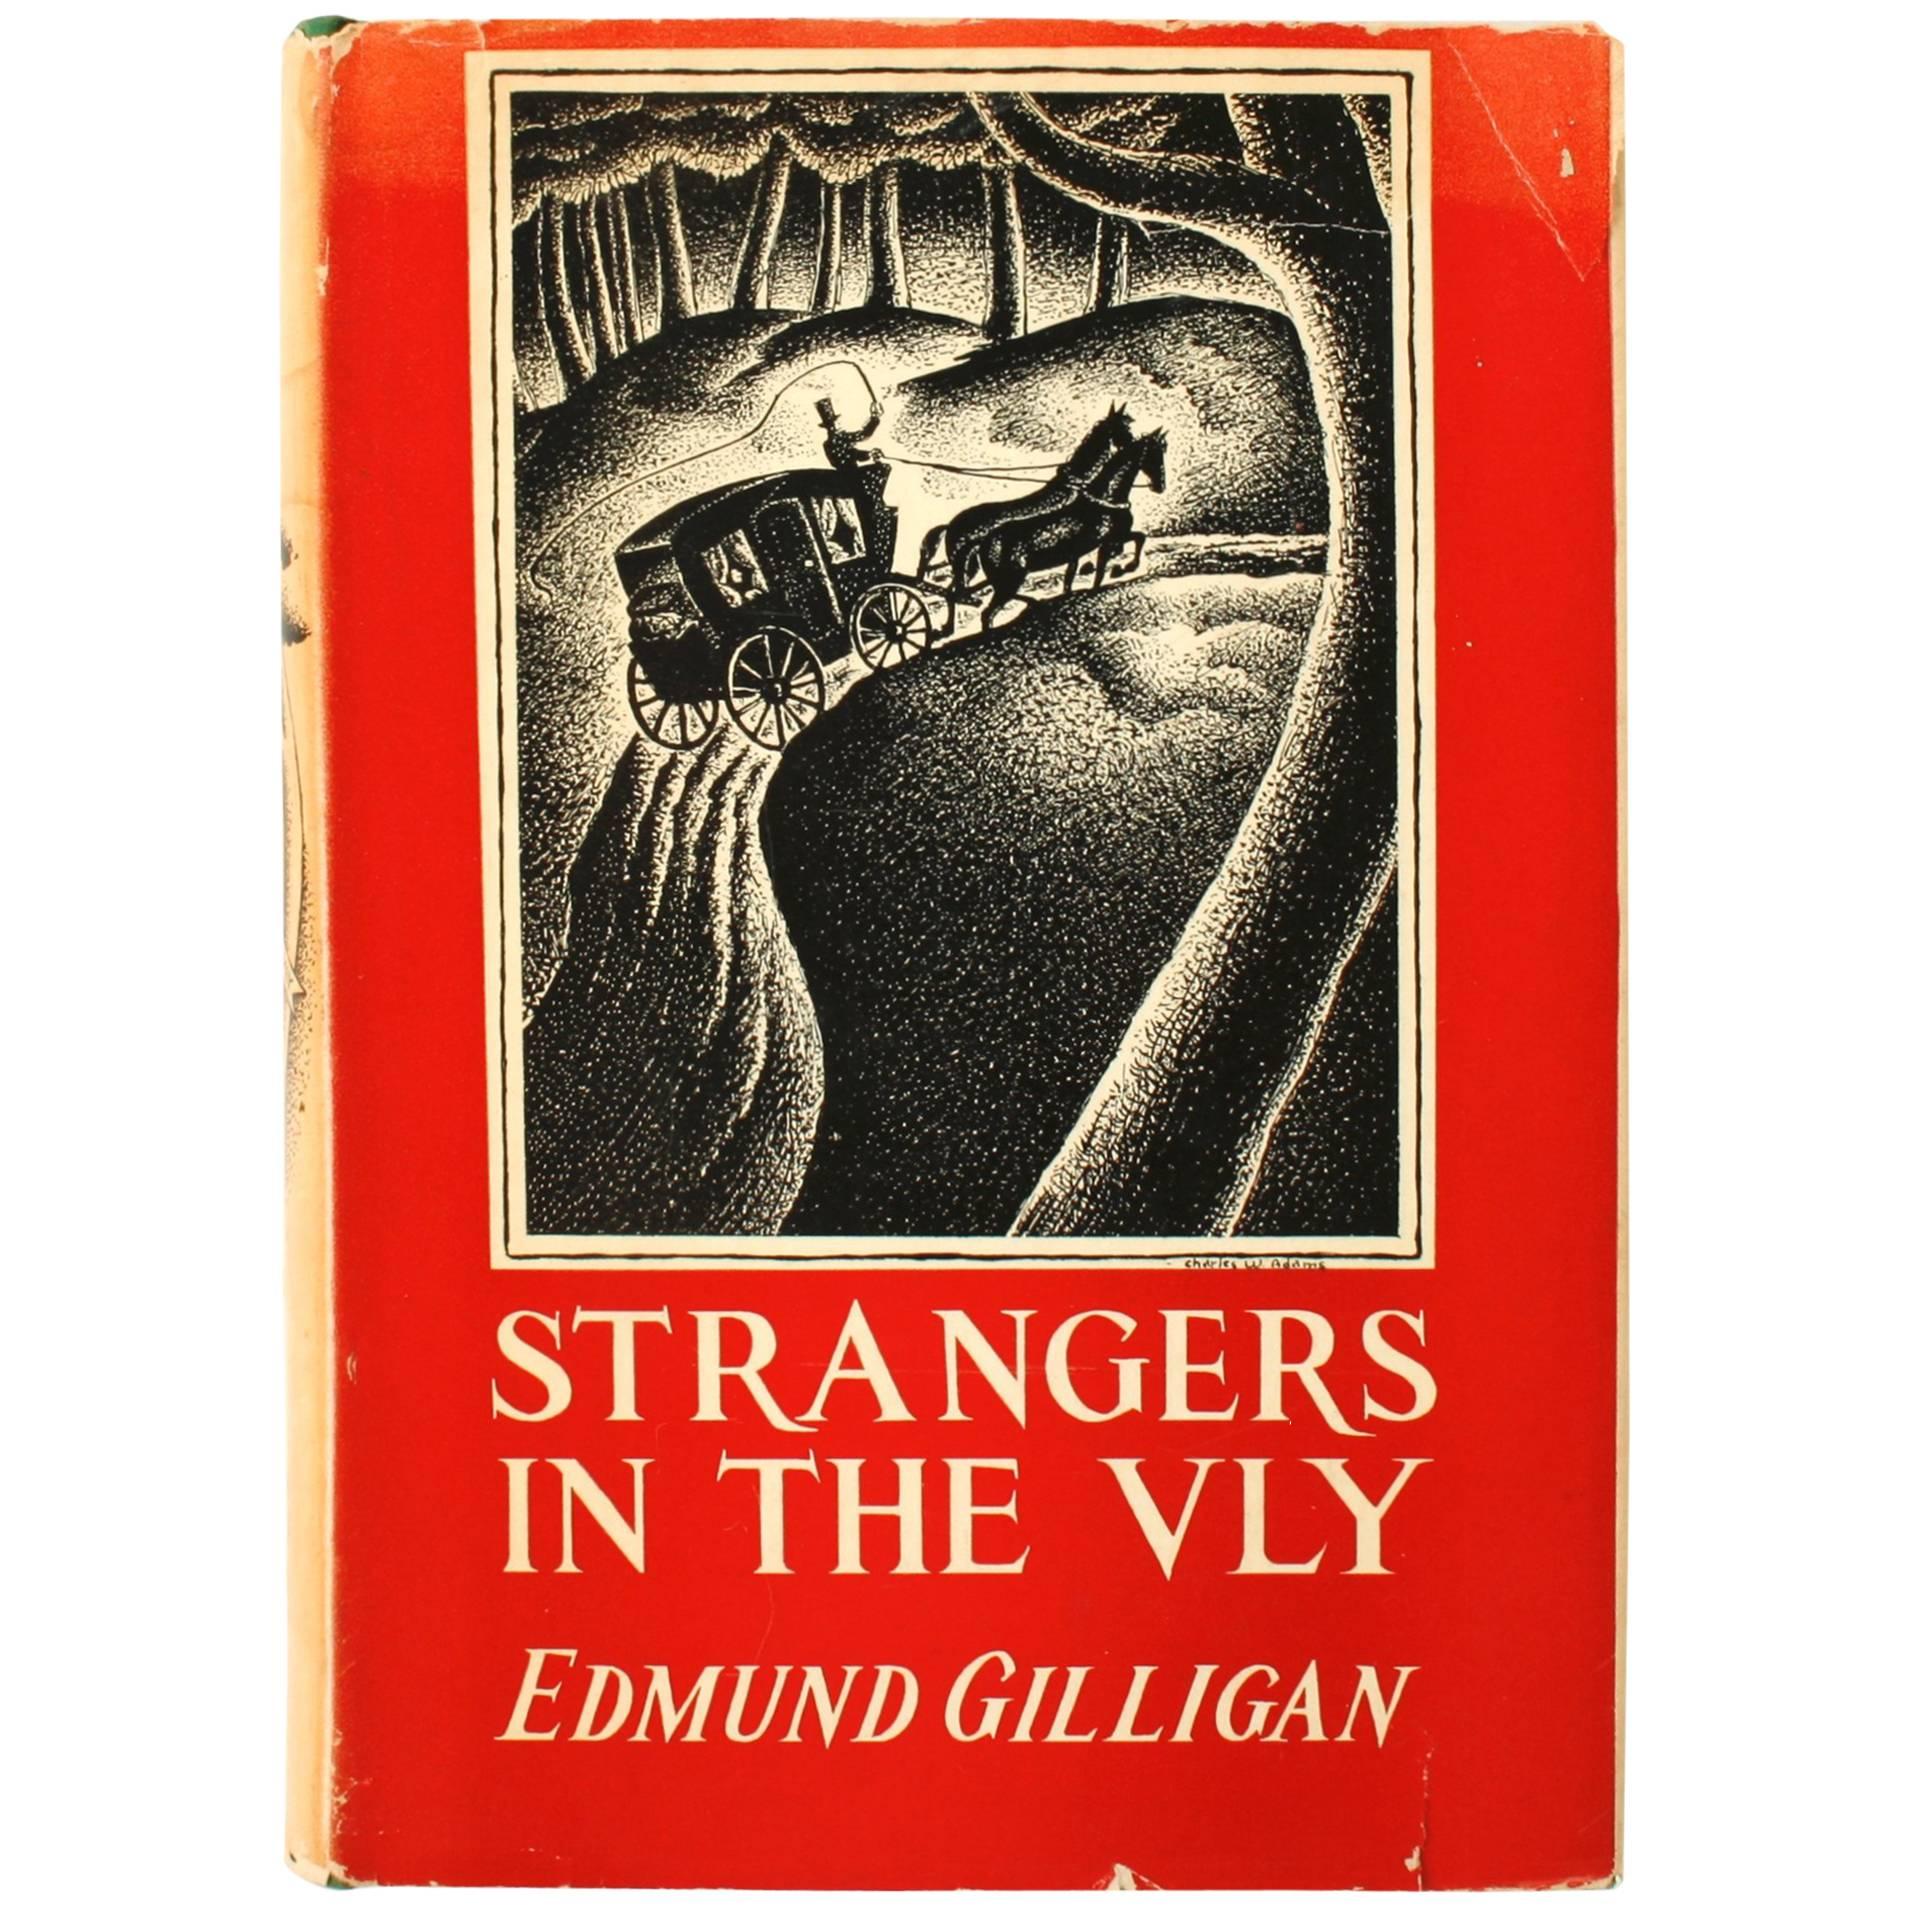 « Strangers in the Vly » d'Edmund Gilligan, première édition et première impression